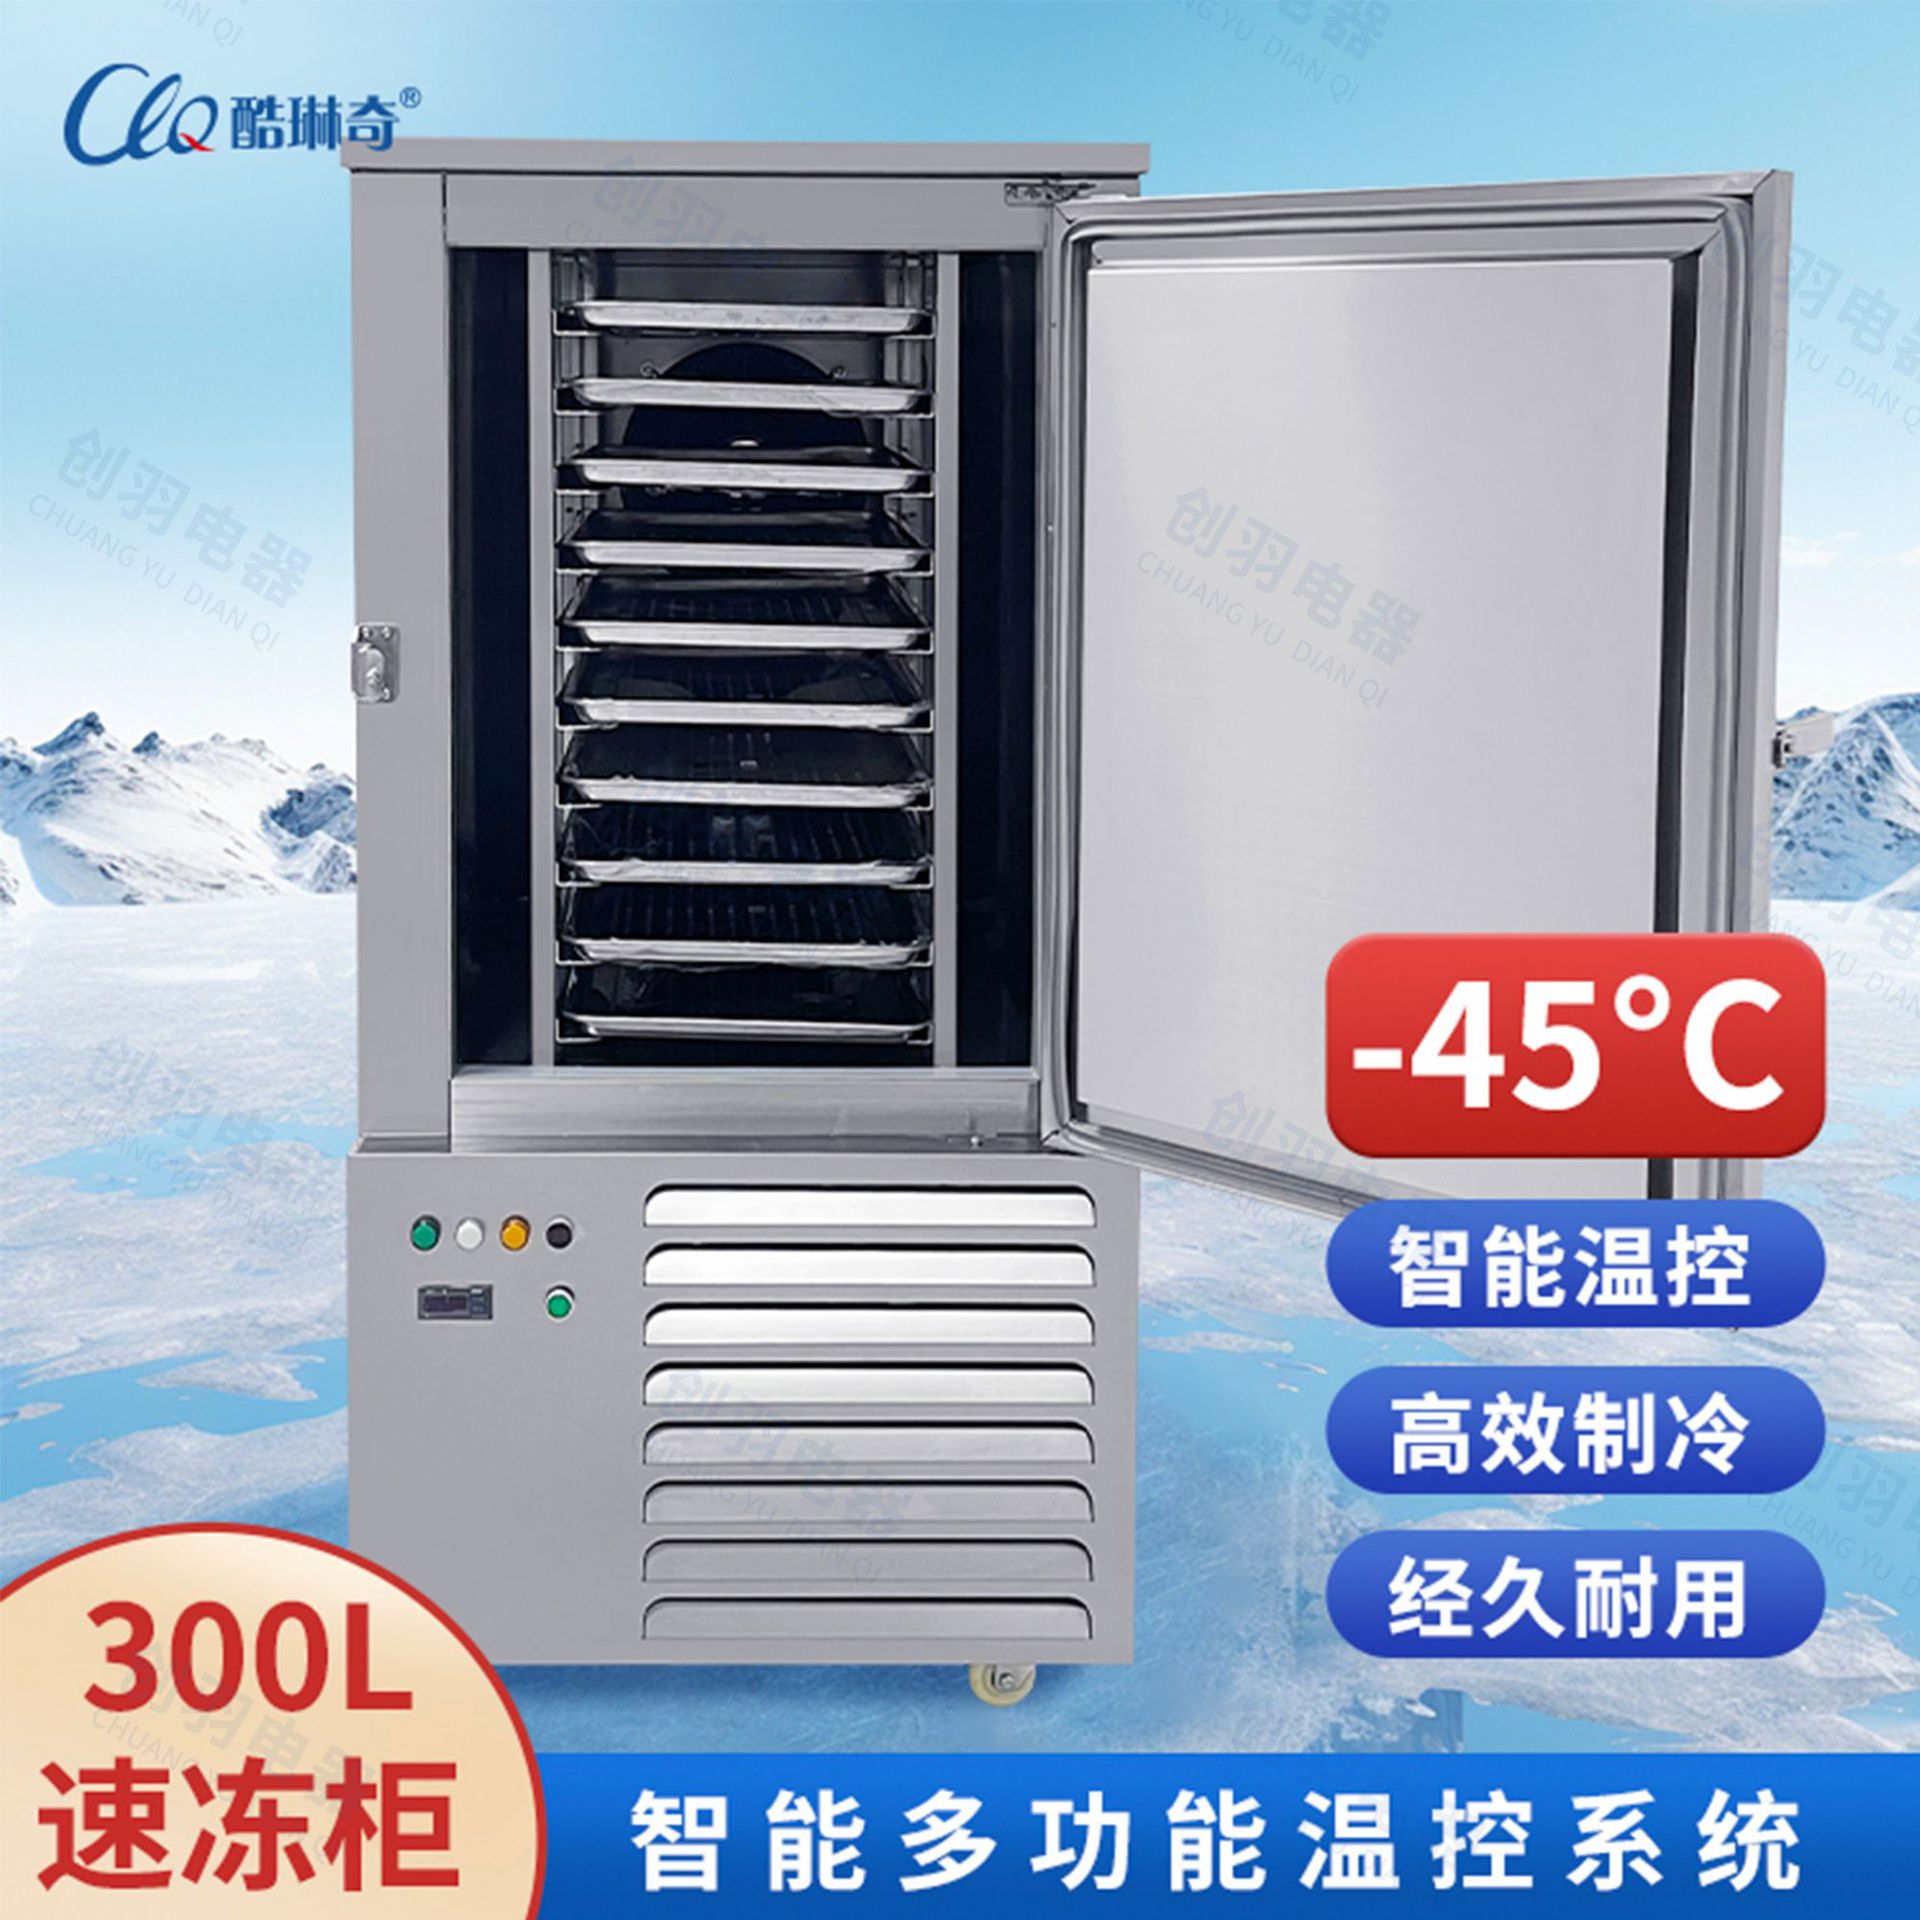 狮山速冻机工厂 月子鱼小红斑超低温商用食品速冻柜-45度饺子冷冻